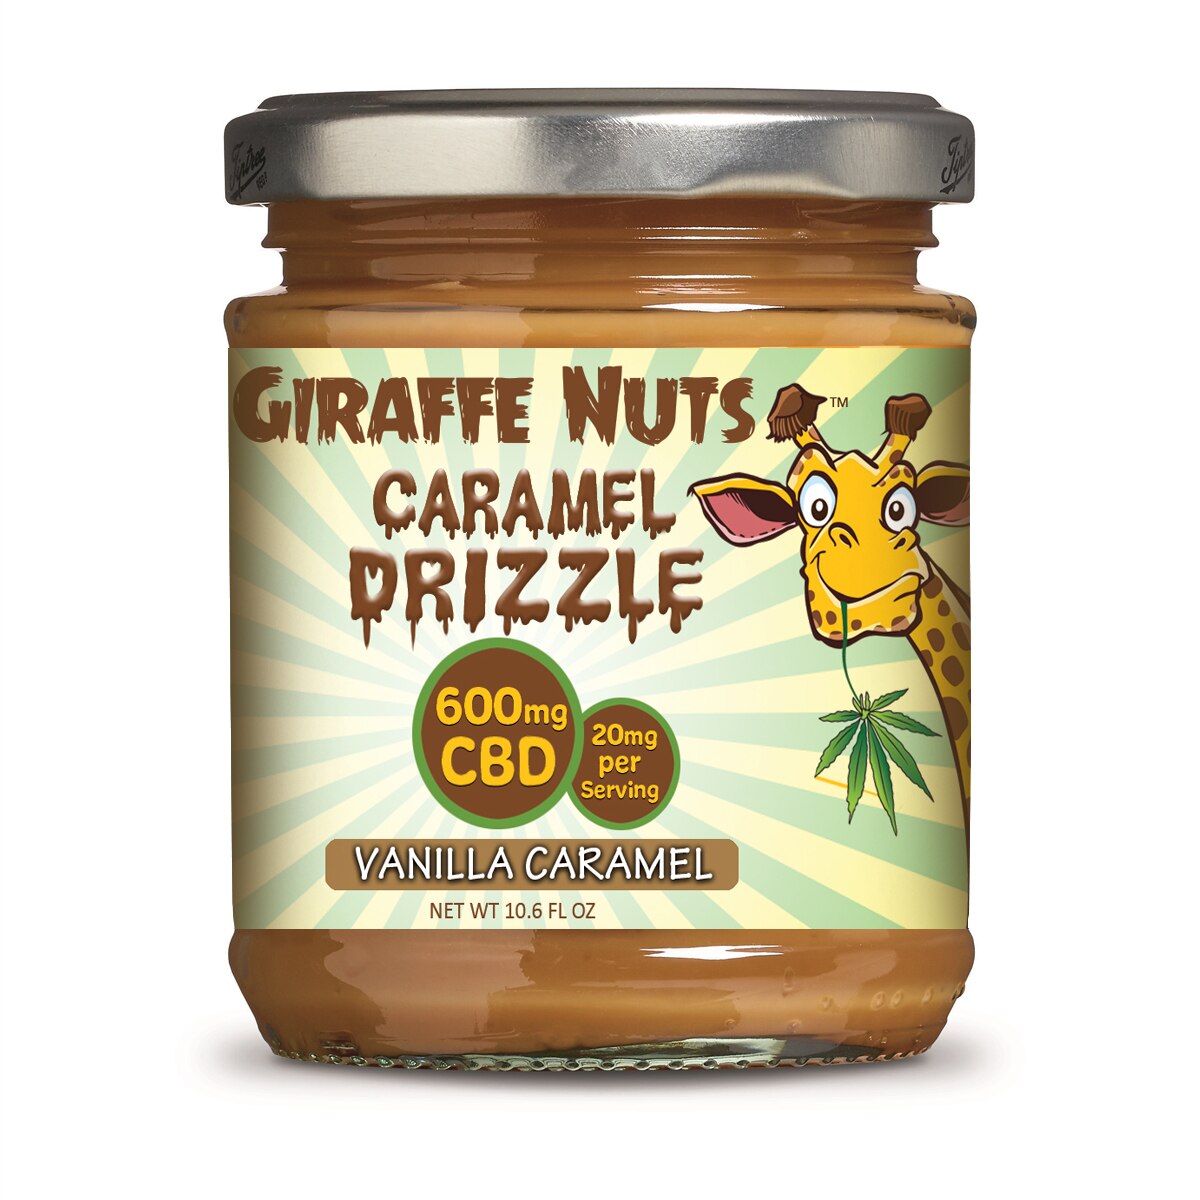 Giraffe Nuts CBD Gluten Free Caramel Drizzle - 600mg CBD Per Jar